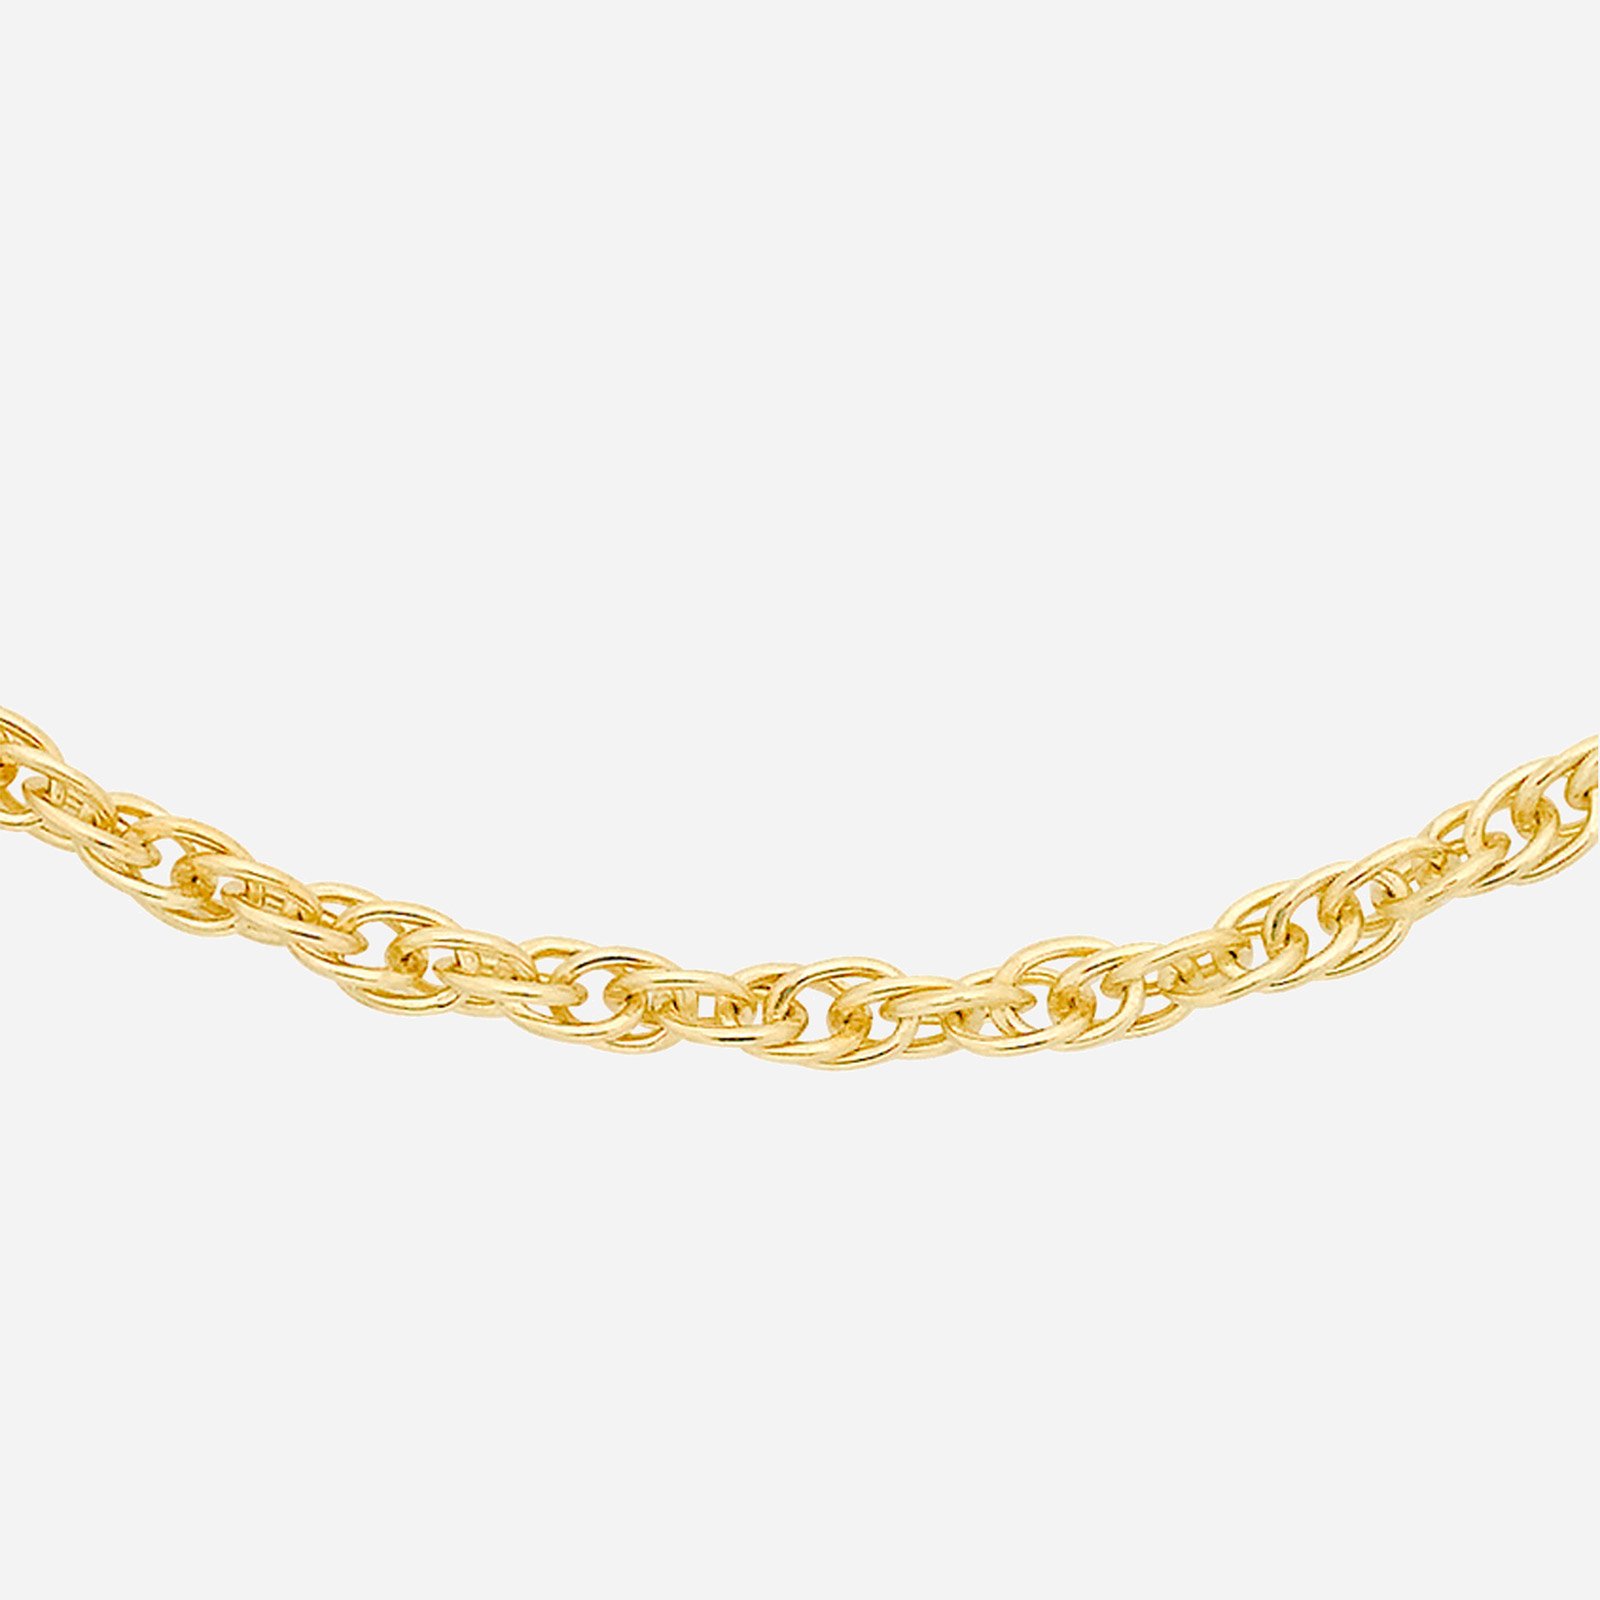 Halsband 9k guld - Prince of Wale, 46 cm